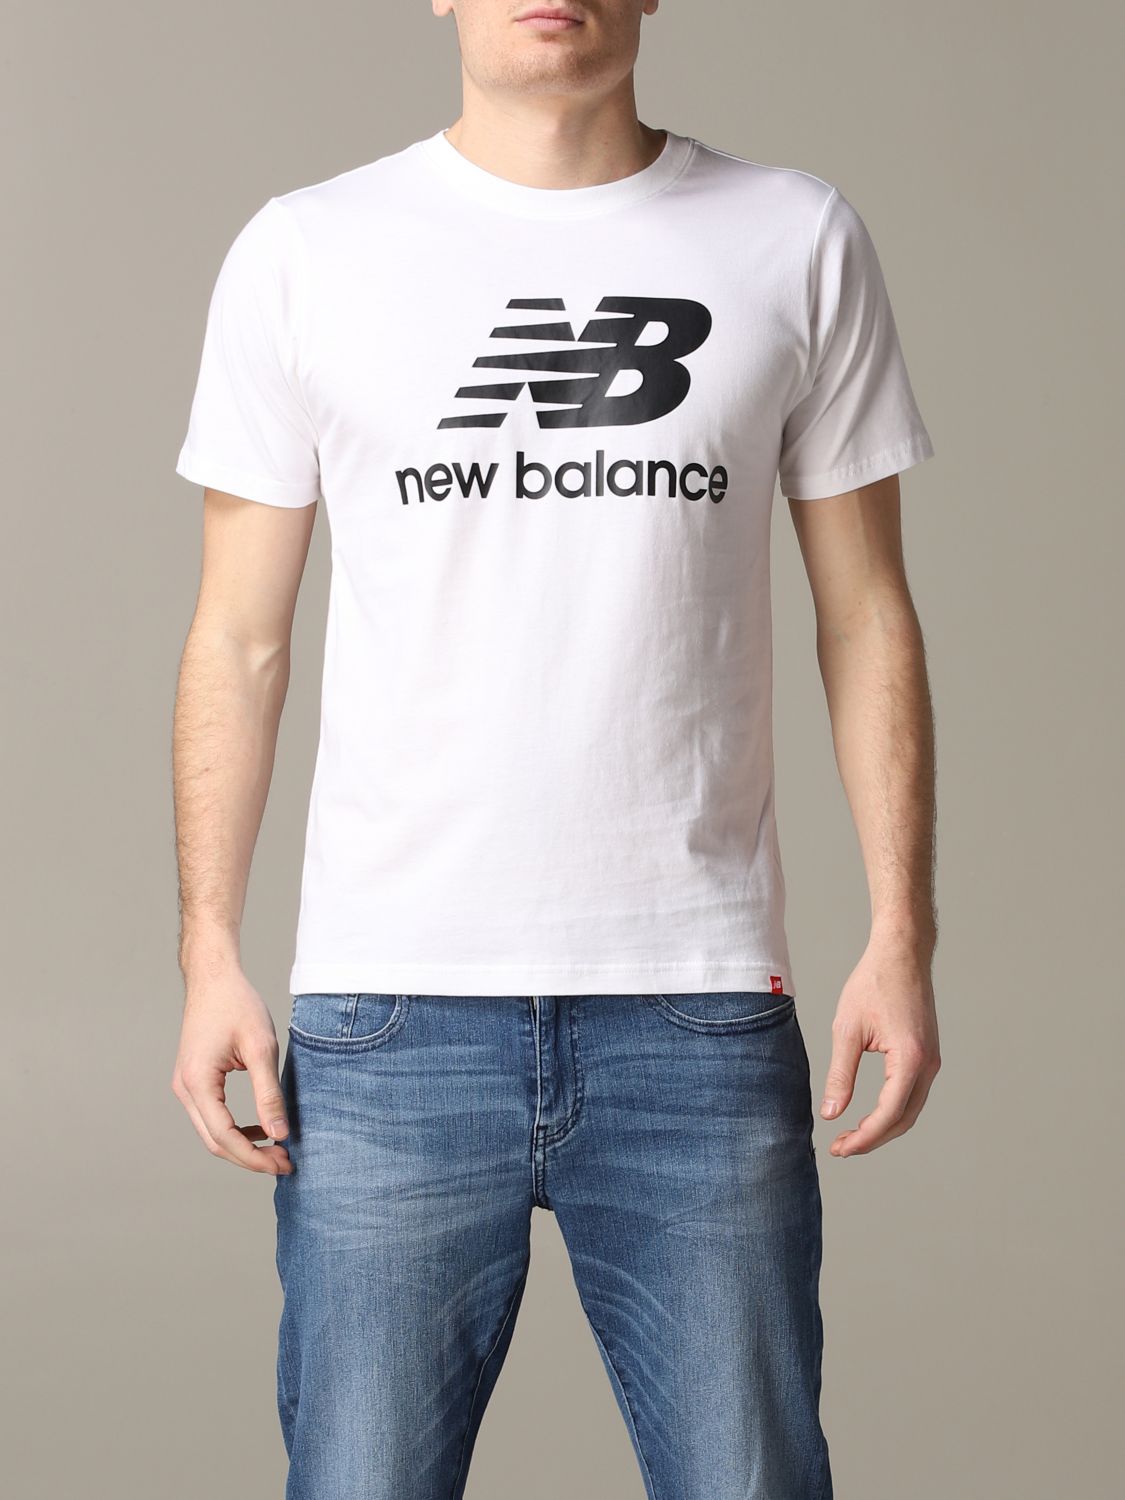 Venta > new balance t shirt herren > en stock